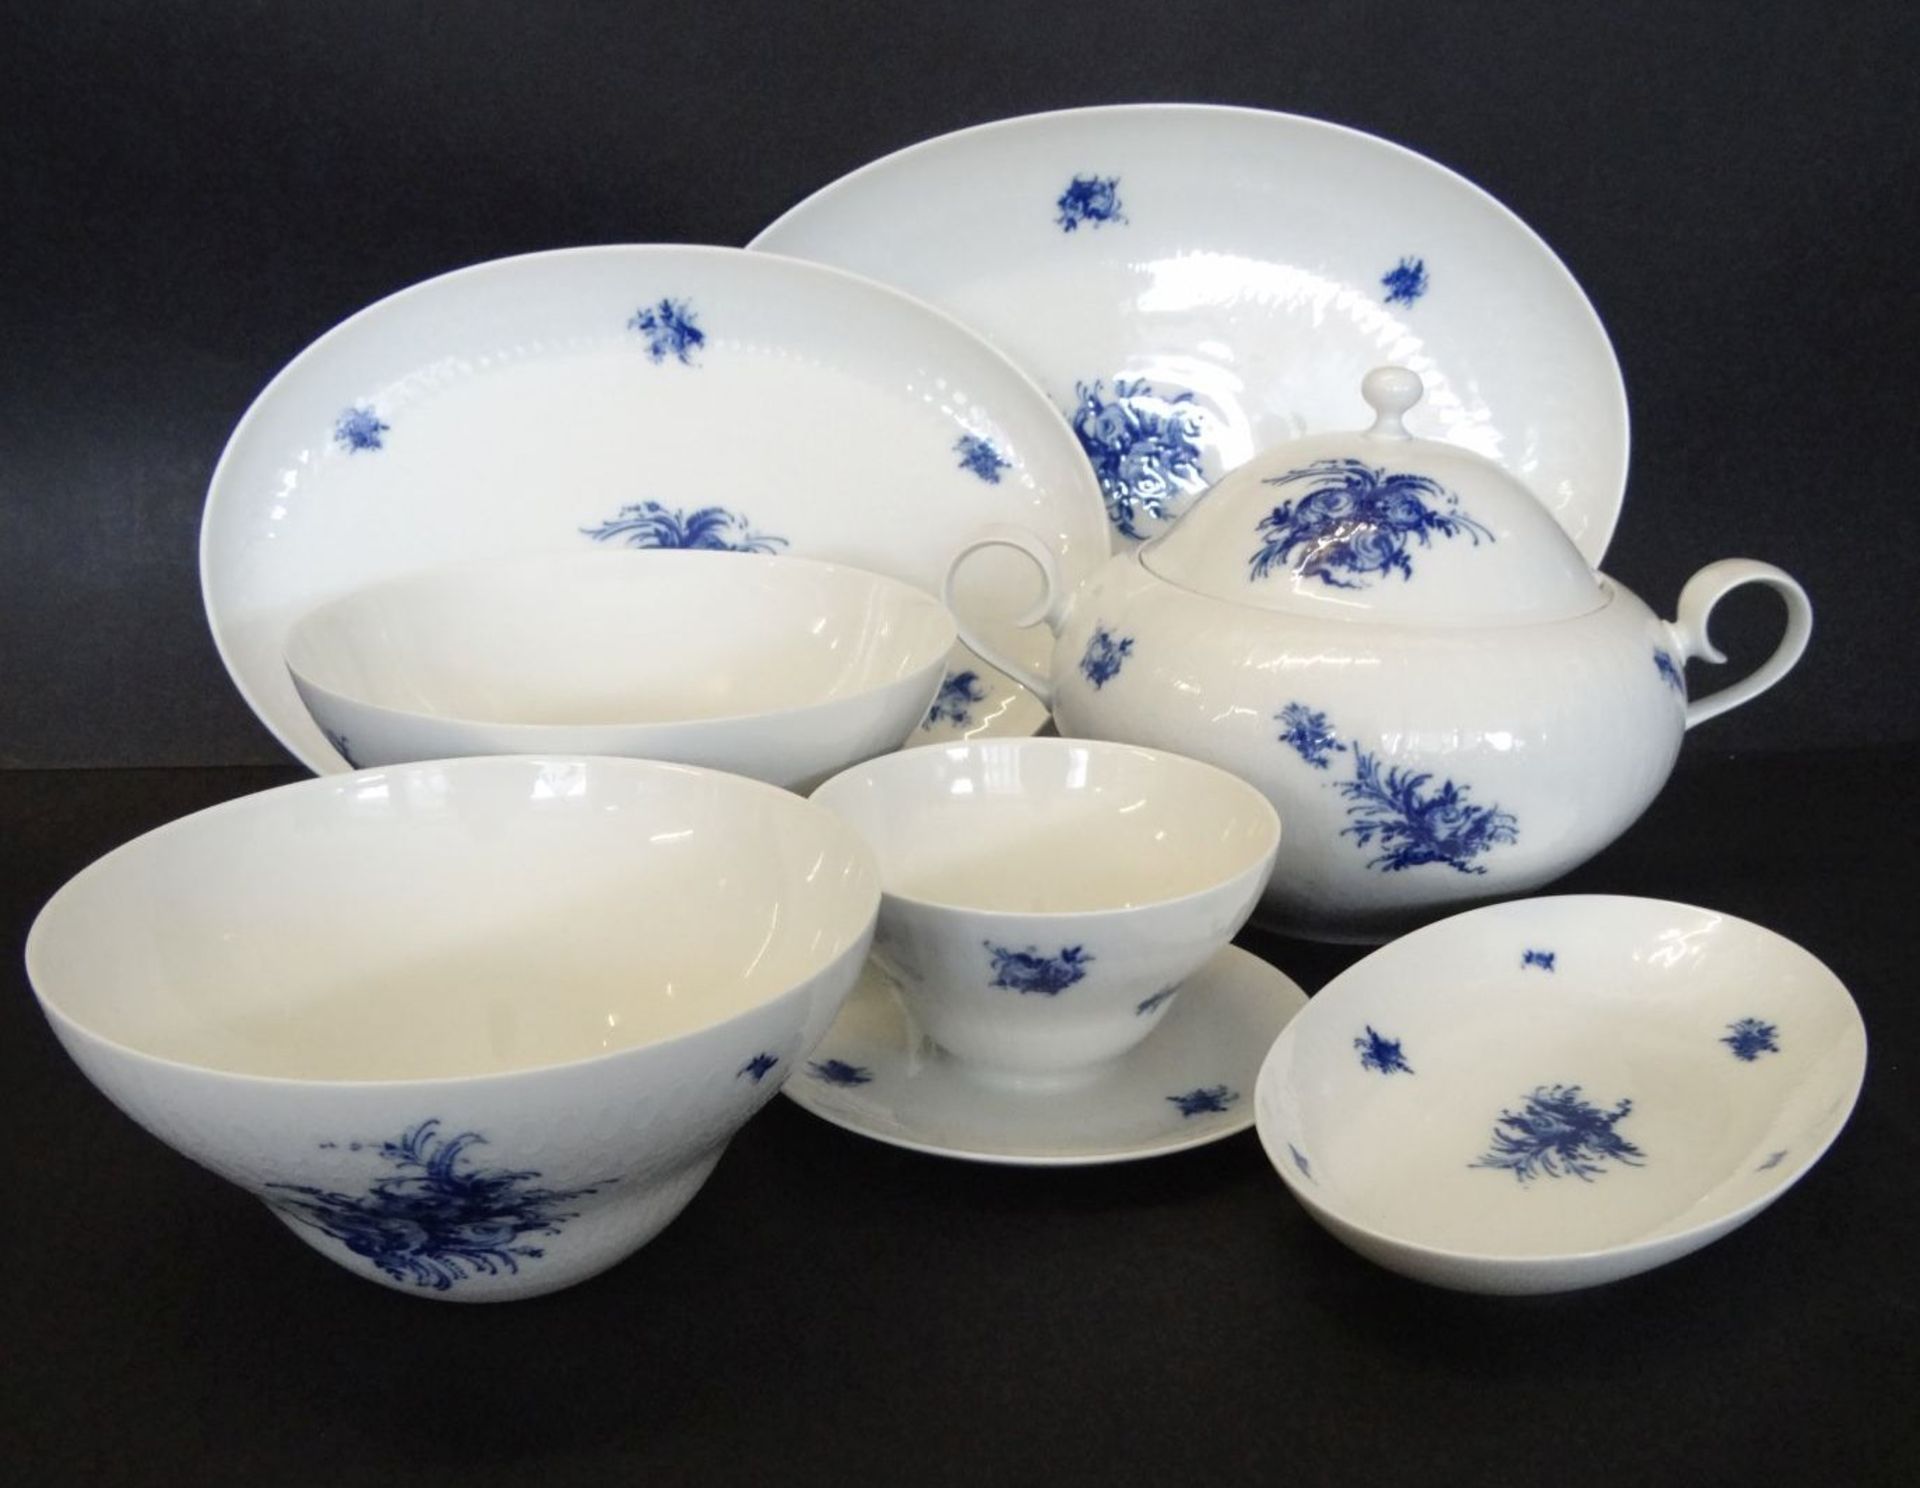 Speiseservice für 8 Personen "Rosenthal" , blaue Blumen, zus. 31 Teile, Terrine, 3 ovale Platten, - Bild 2 aus 3